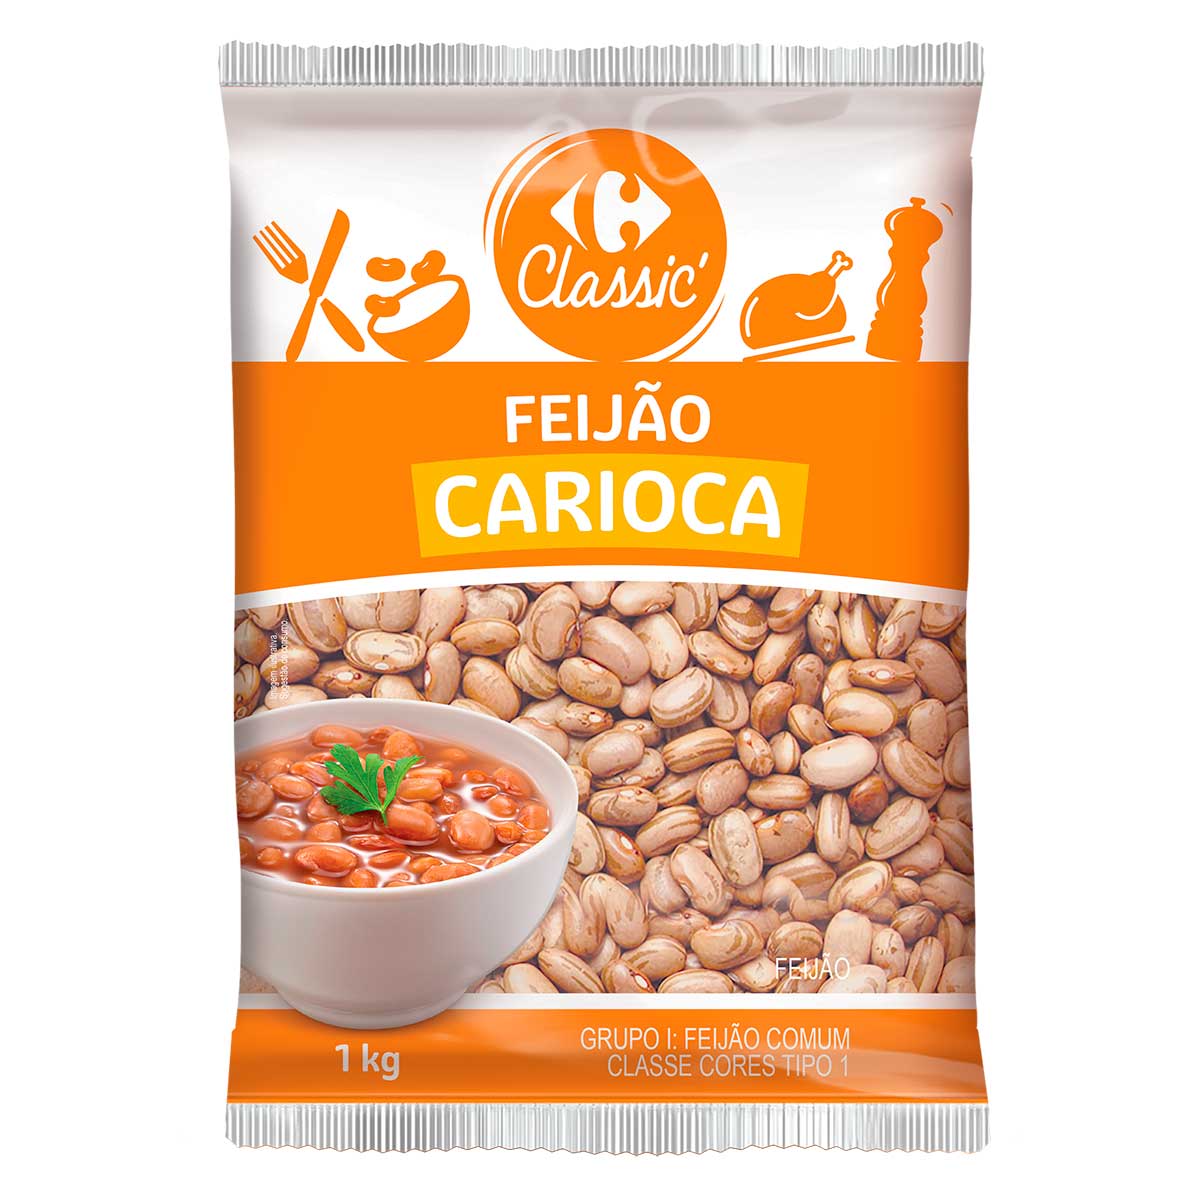 feijao-carioca-carrefour-classic-1kg-1.jpg